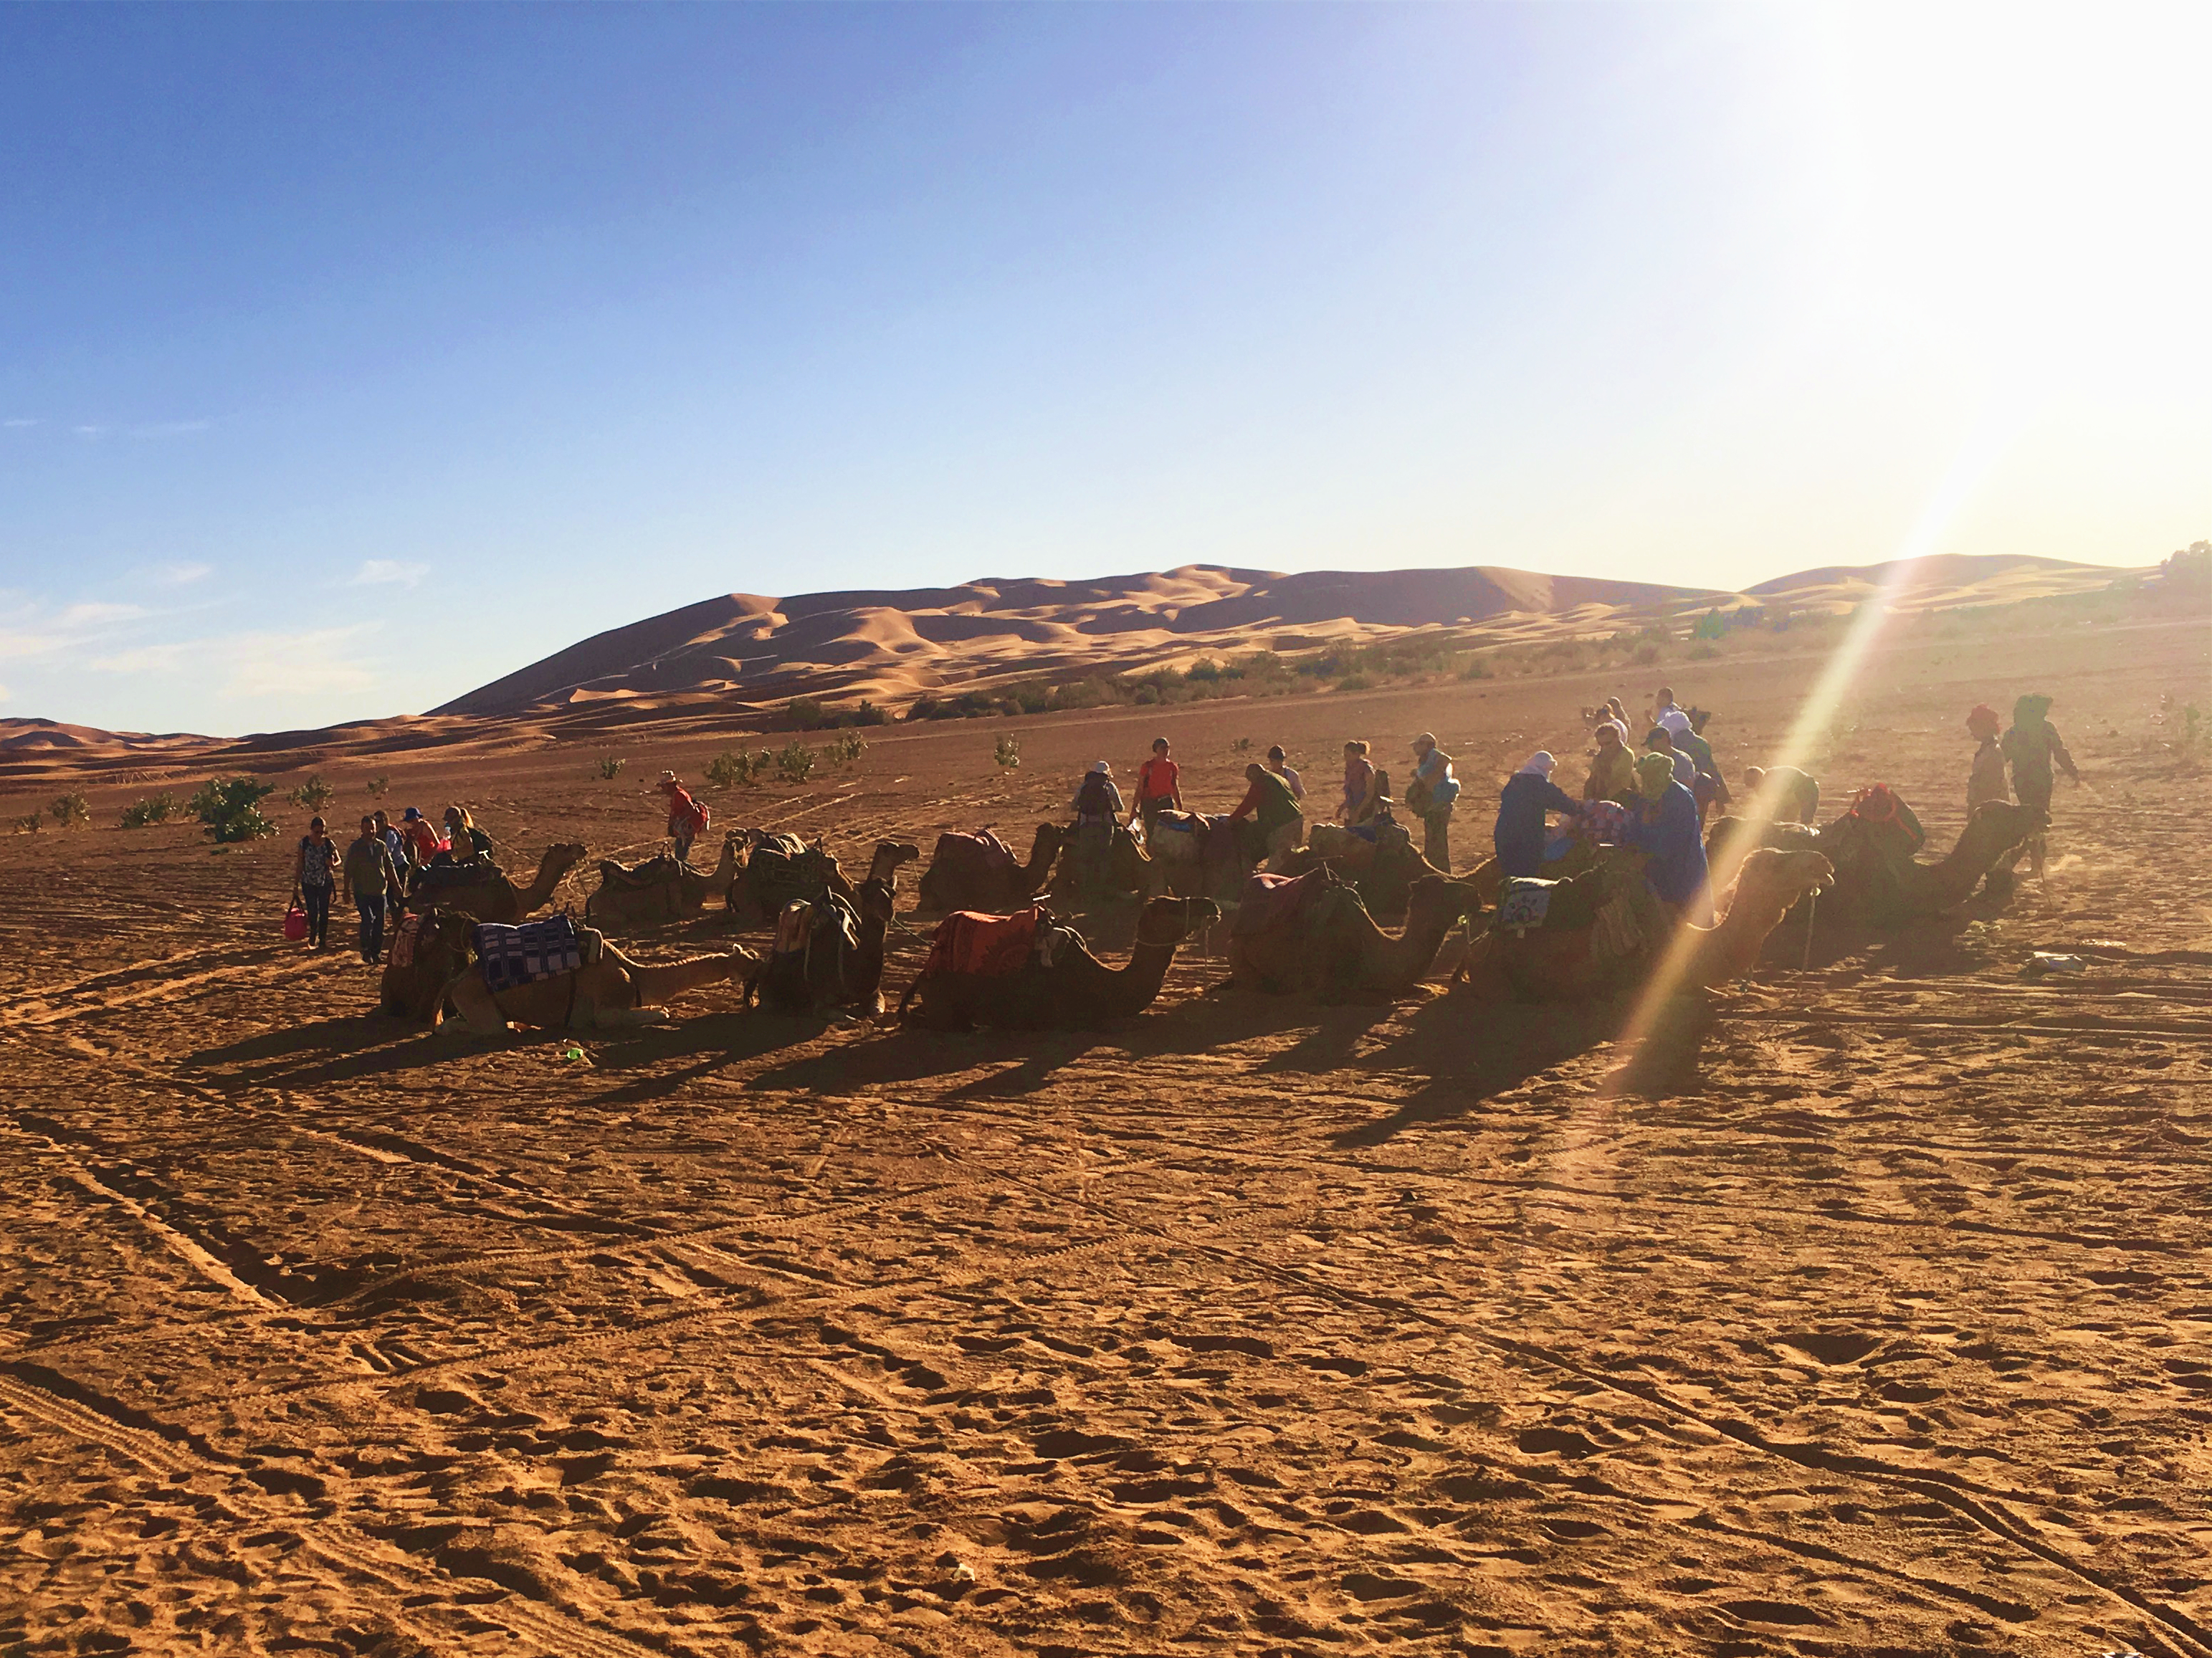 驱车梅尔祖卡营地，转乘骆驼深入撒哈拉   梅尔祖卡的营地，朴素的柏柏尔人和他们的骆驼阵是入沙漠向导一